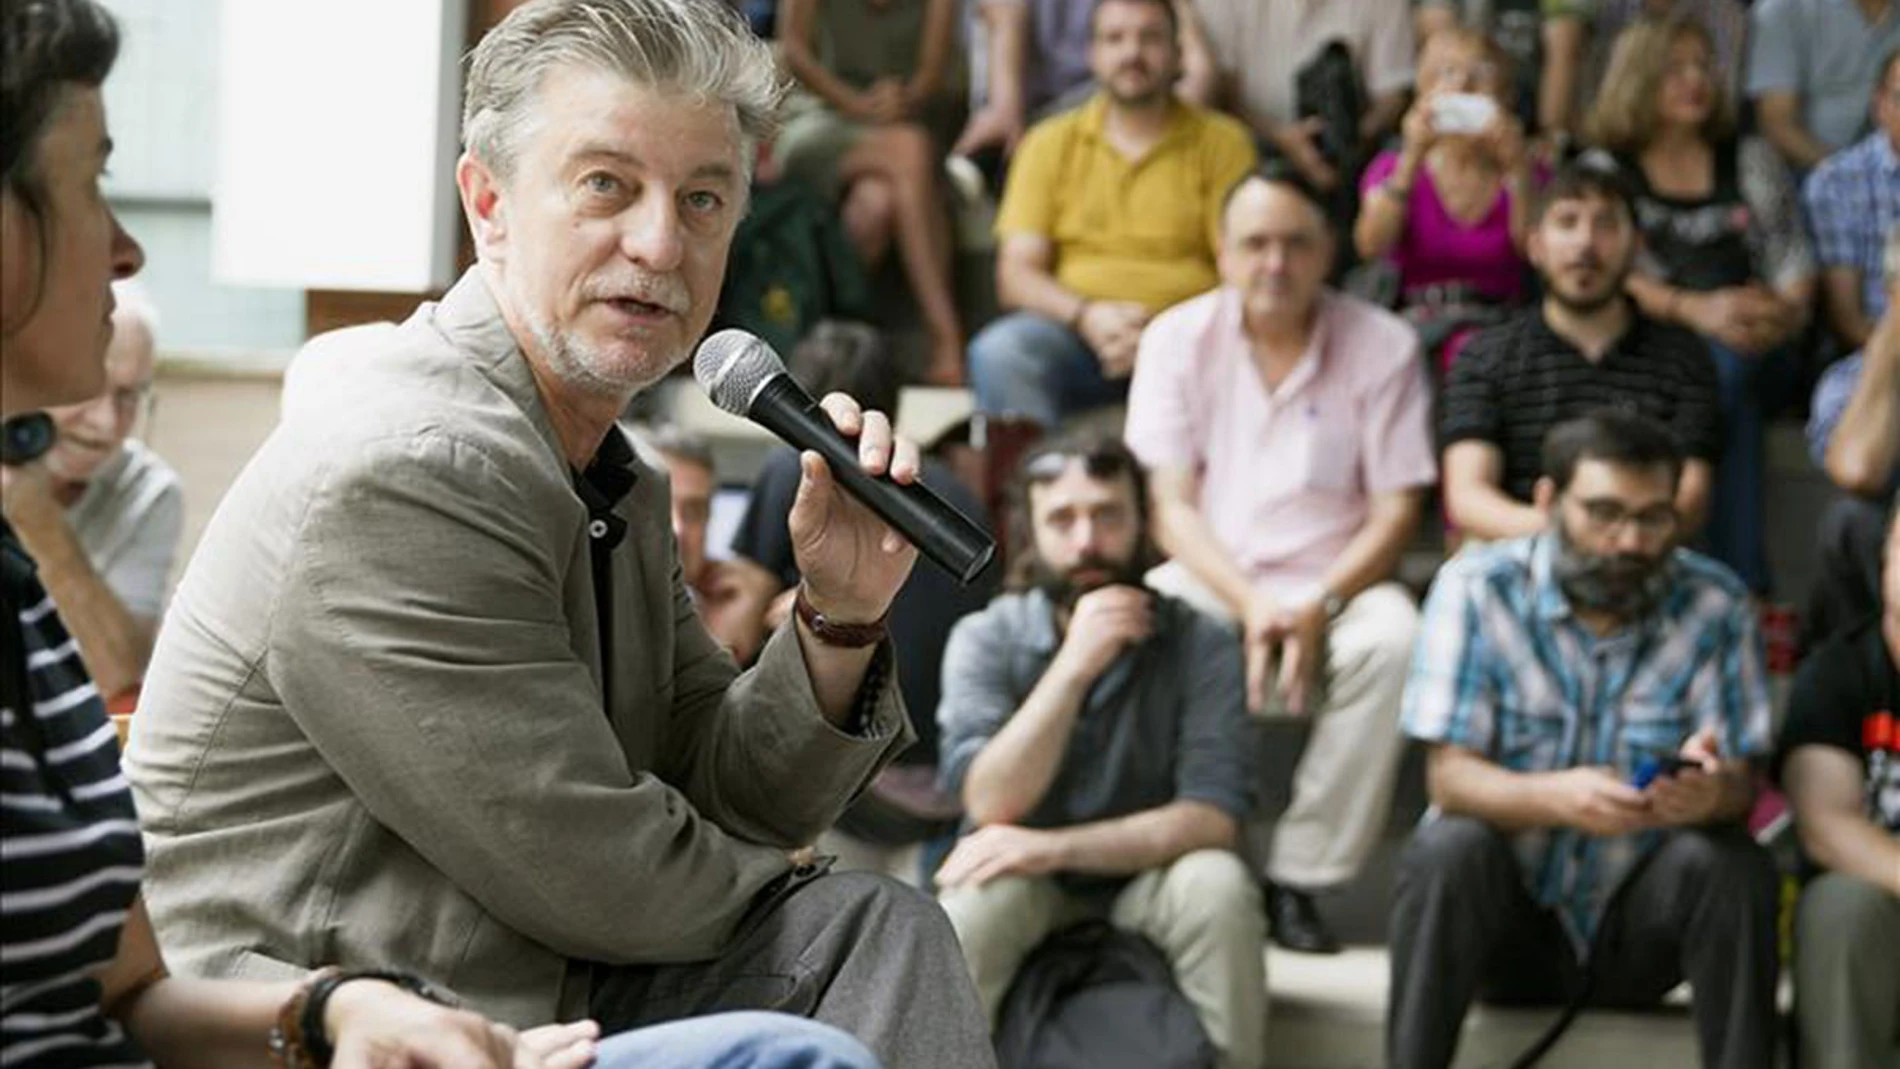 Pedro Santisteve, nuevo alcalde de Zaragoza: "Parar los desahucios, la prioridad"